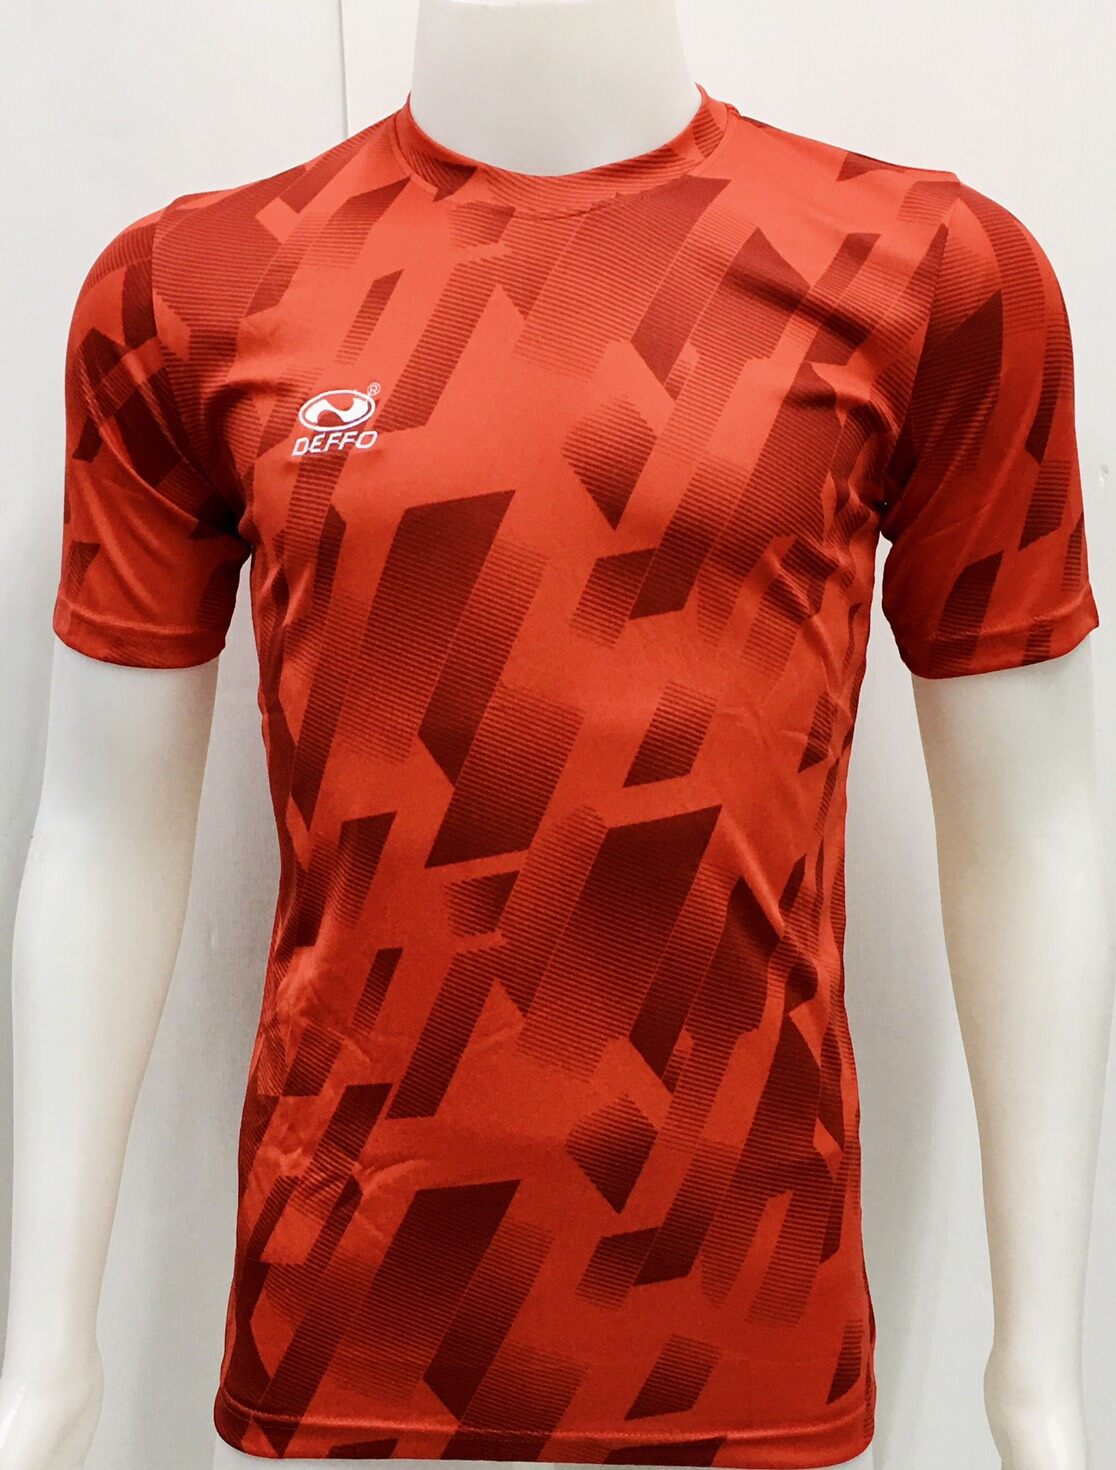 Deffo Sport เสื้อกีฬาผ้าพิมพ์ลาย เดฟโฟ ของแท้ (สีแดง)